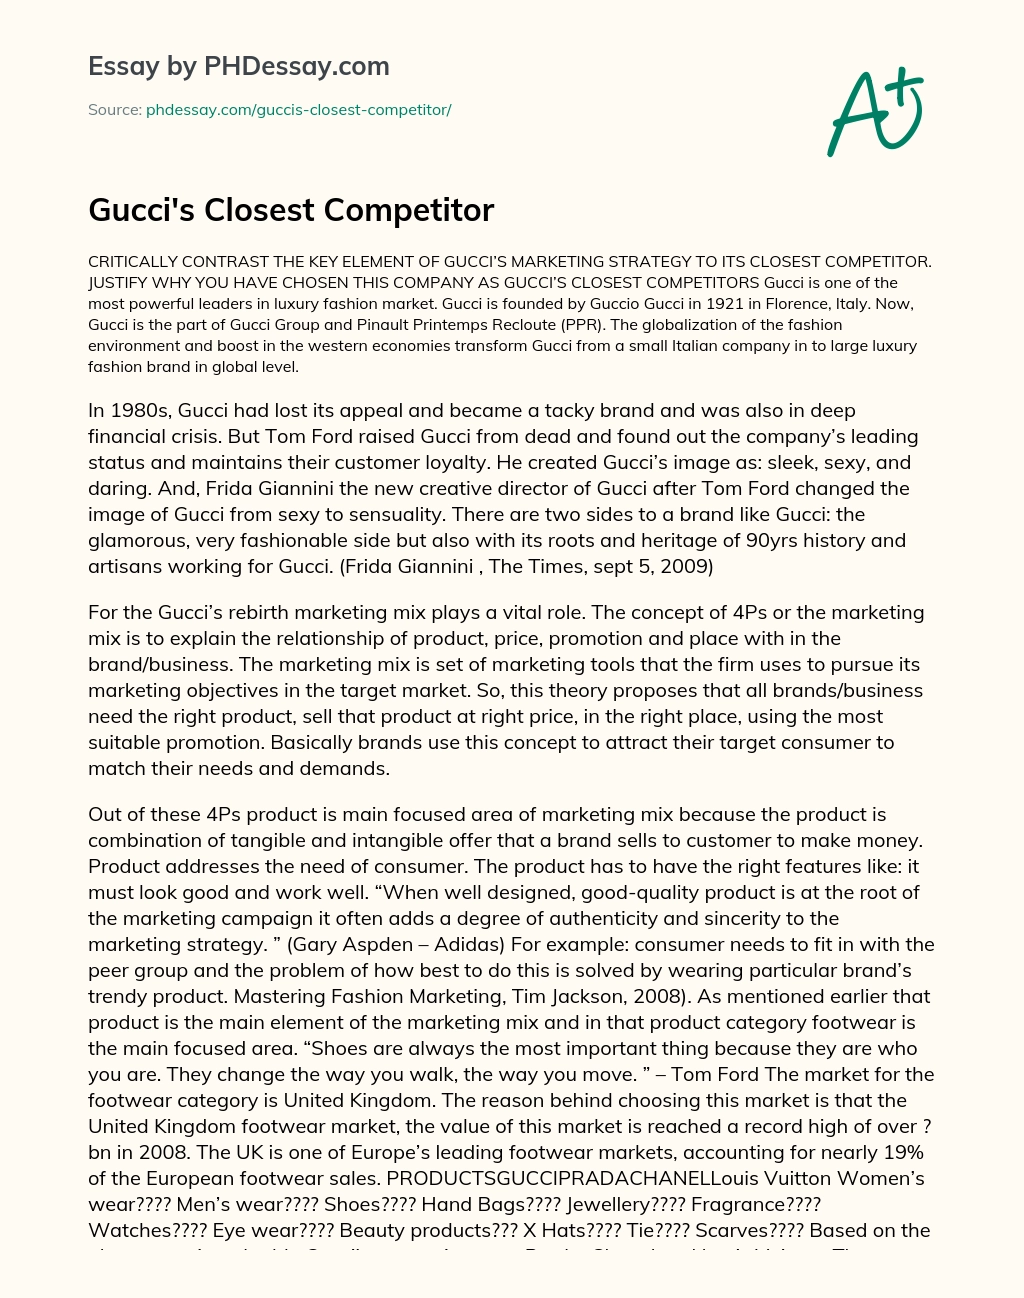 Gucci’s Closest Competitor essay